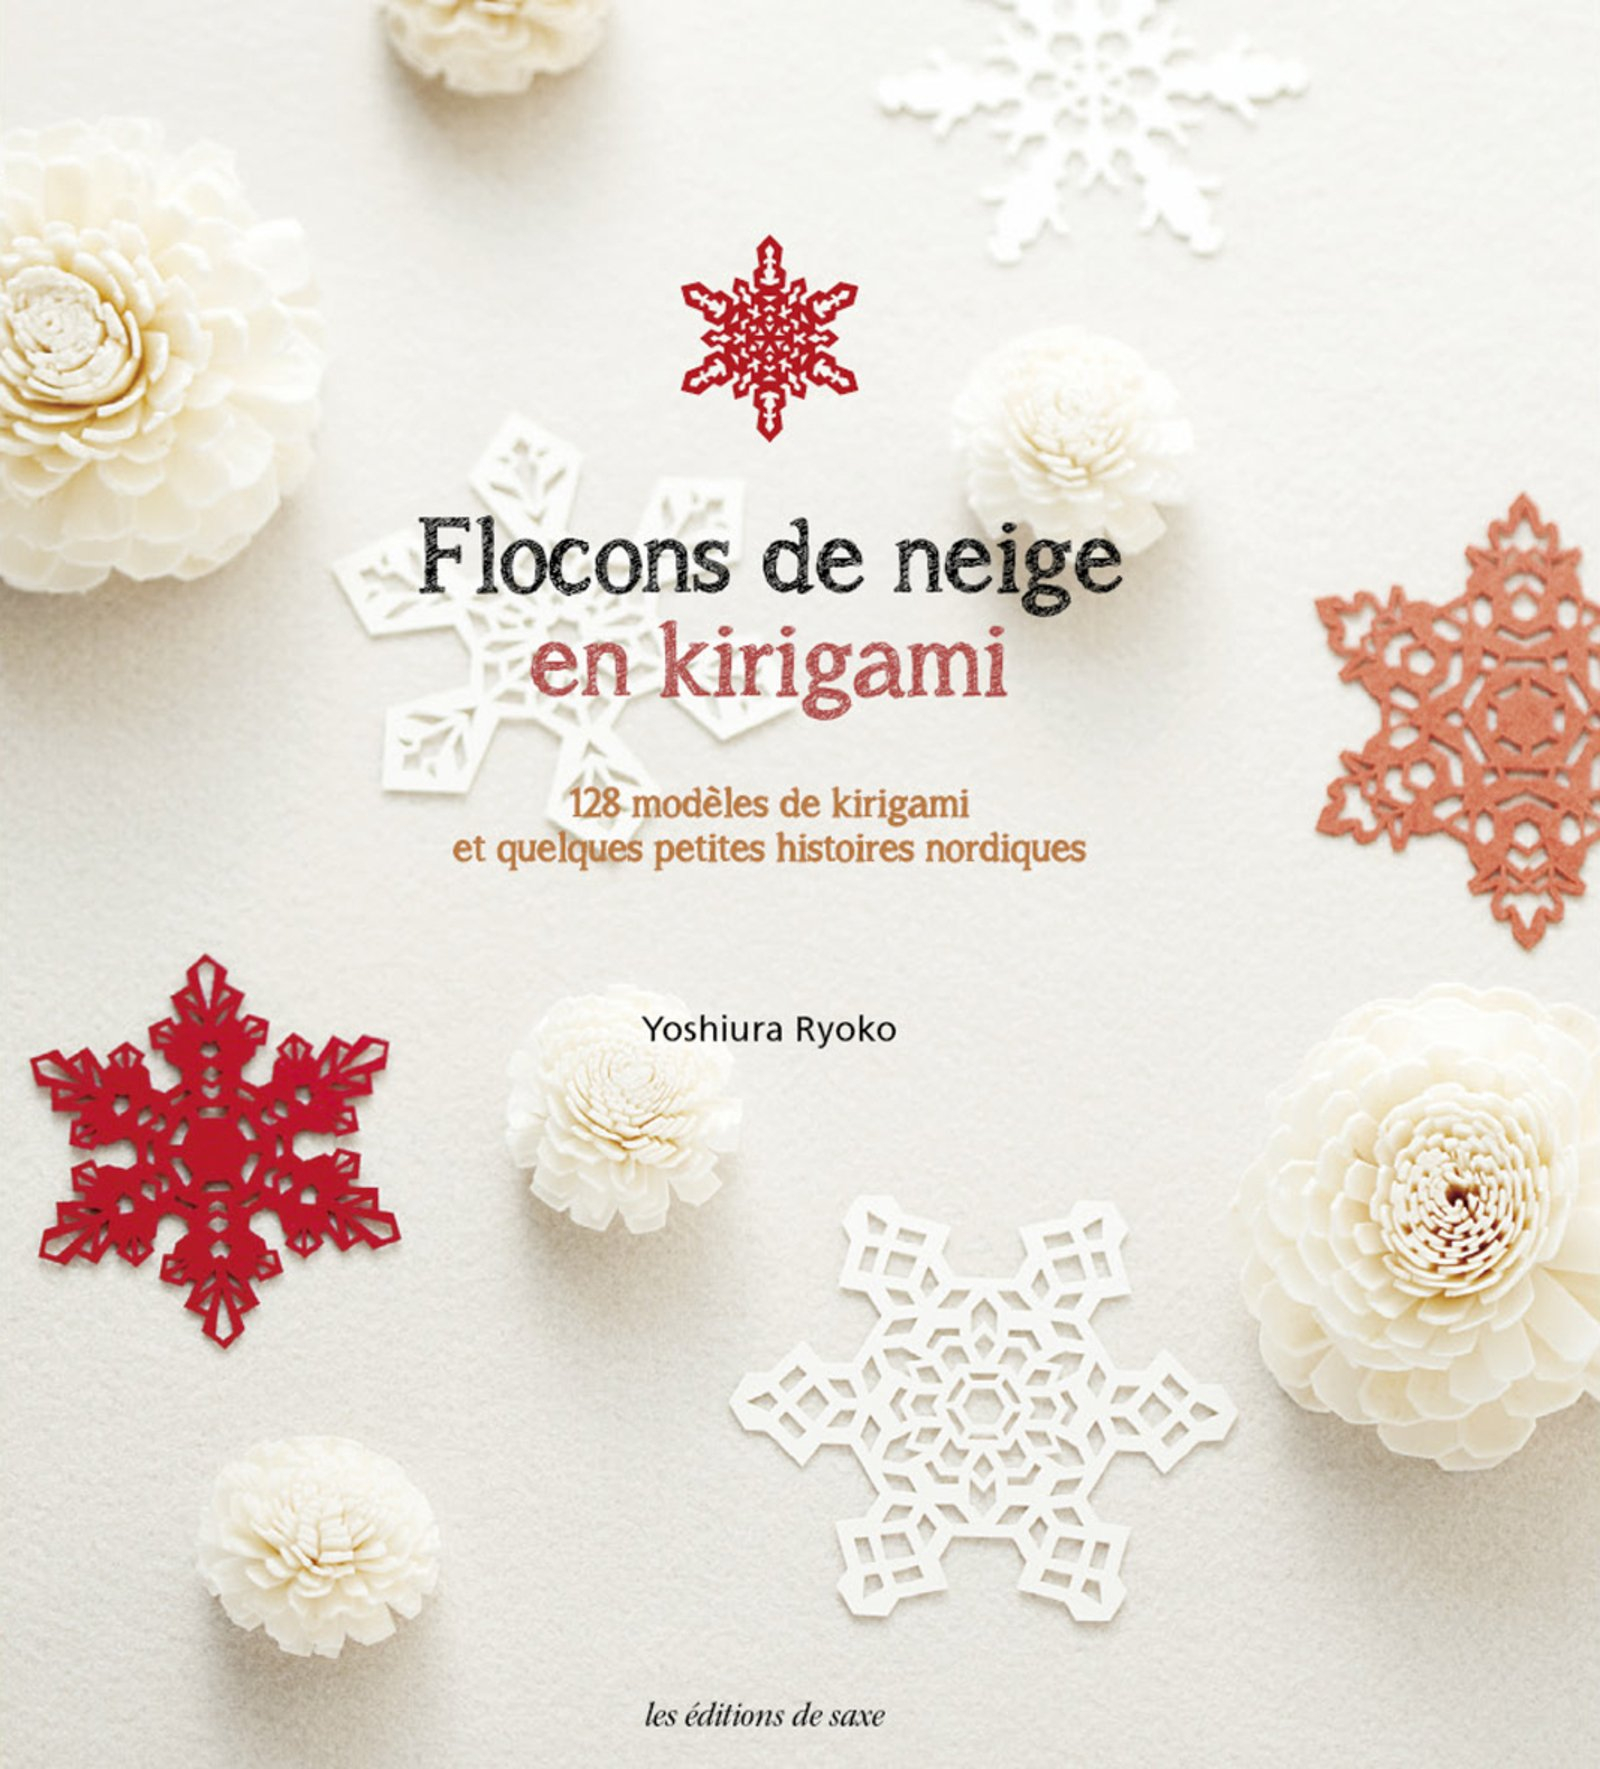 Flocons de neige en kirigami : 128 modèles de kirigami et quelques petites histoires nordiques